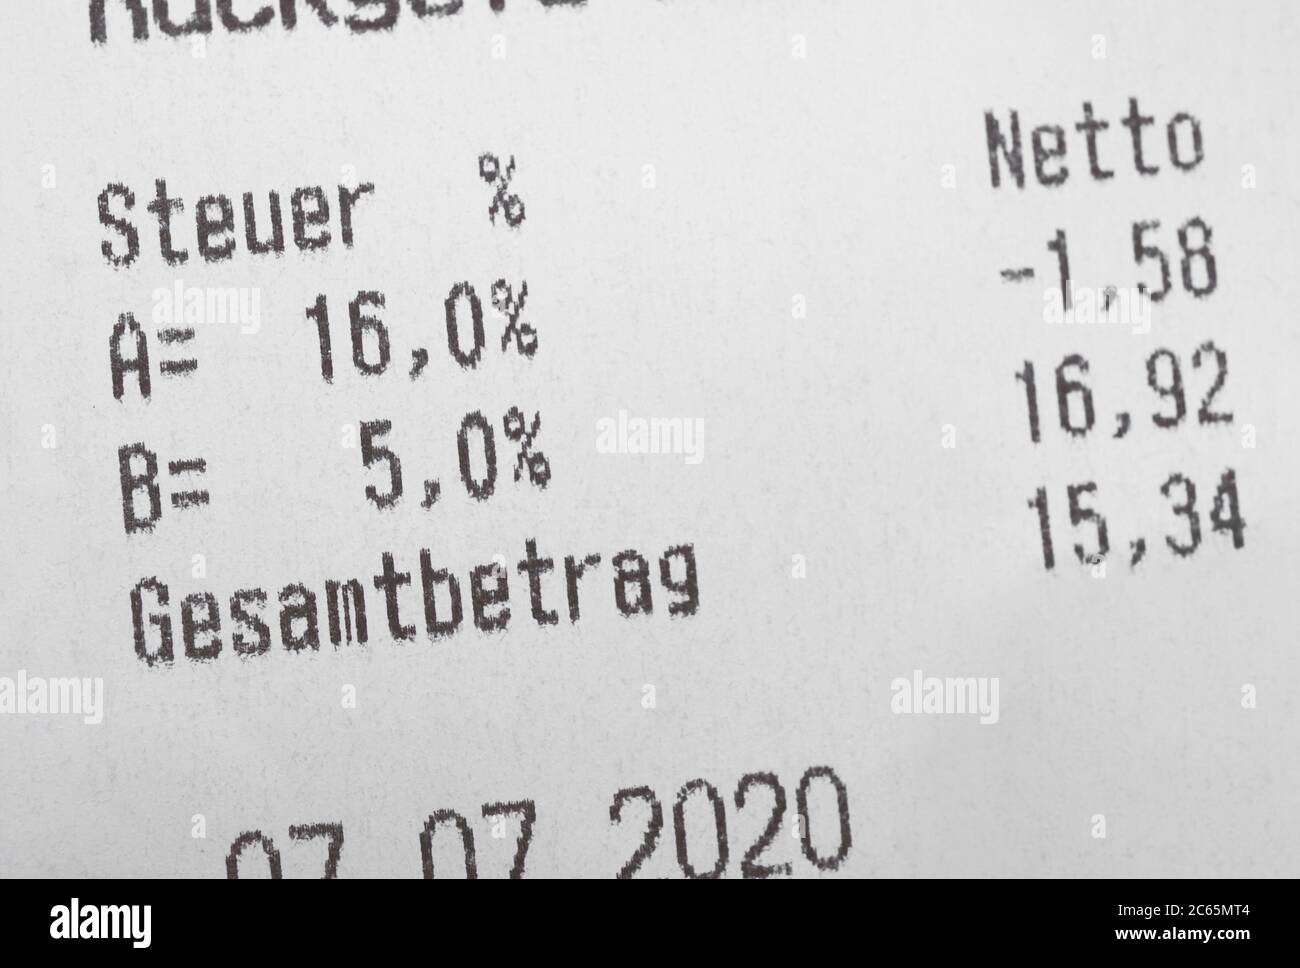 Le reçu montre une réduction du taux de la taxe sur la valeur ajoutée en Allemagne - la TVA s'appelle MwSt ou Mehrwertsteuer en allemand - Traduction en anglais: Steuer signifie TAX et Gesamtbetrag signifie le montant total Banque D'Images